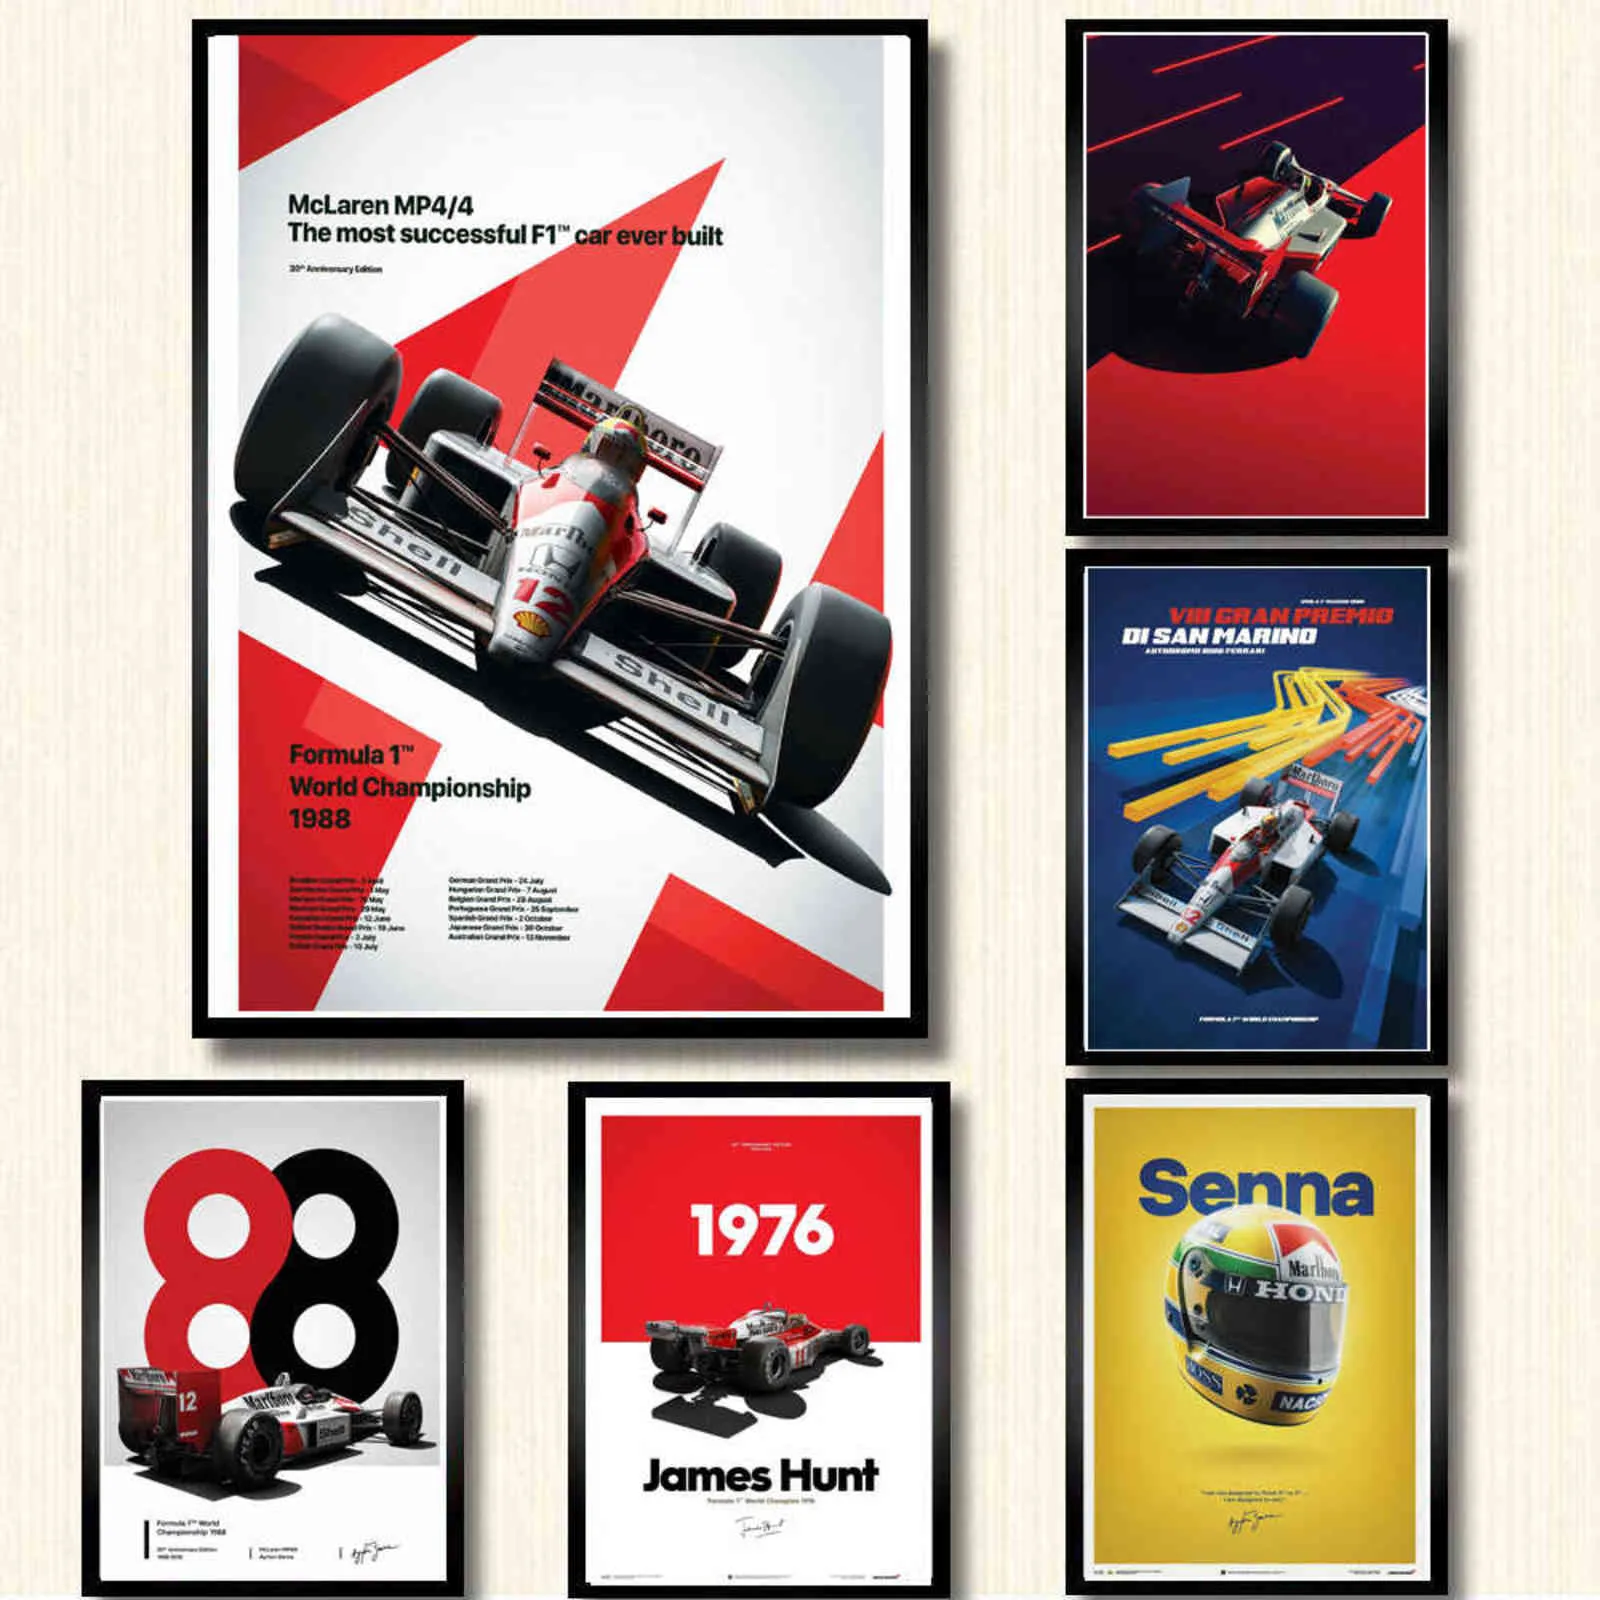 Poster und Drucke Heiß Ayrton Senna F1 Formel Weltmeister Wandkunst Leinwand Bild Malerei Modernes Dekor Schilderij Obrazy H1110